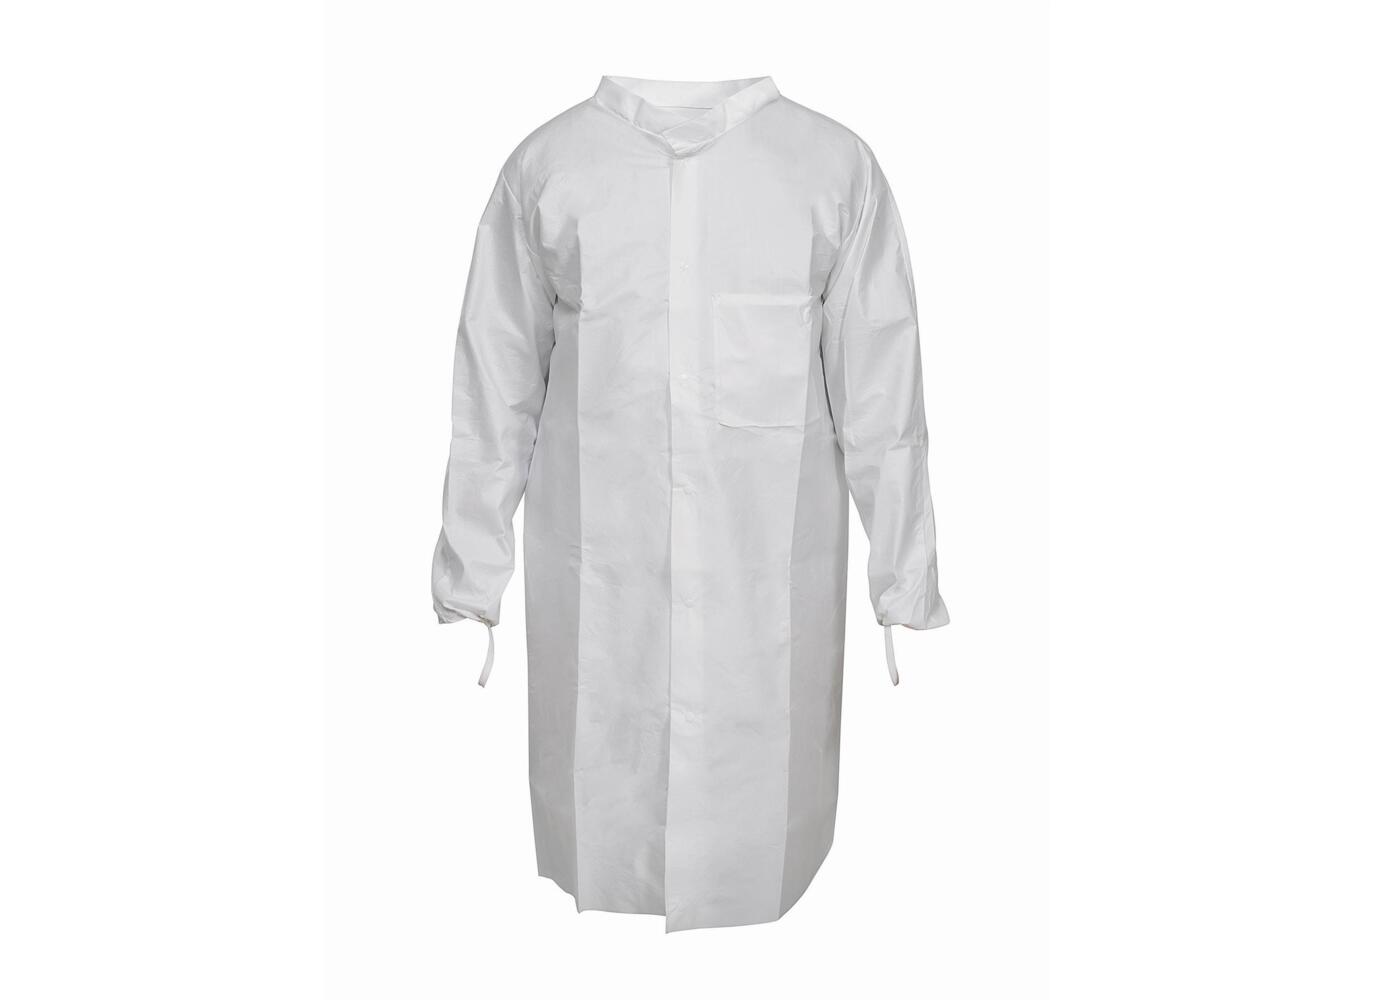 Kimtech™ A7 P+, Laboratory Coat 97710 - White, M, 1x15 (15 total) - 97710